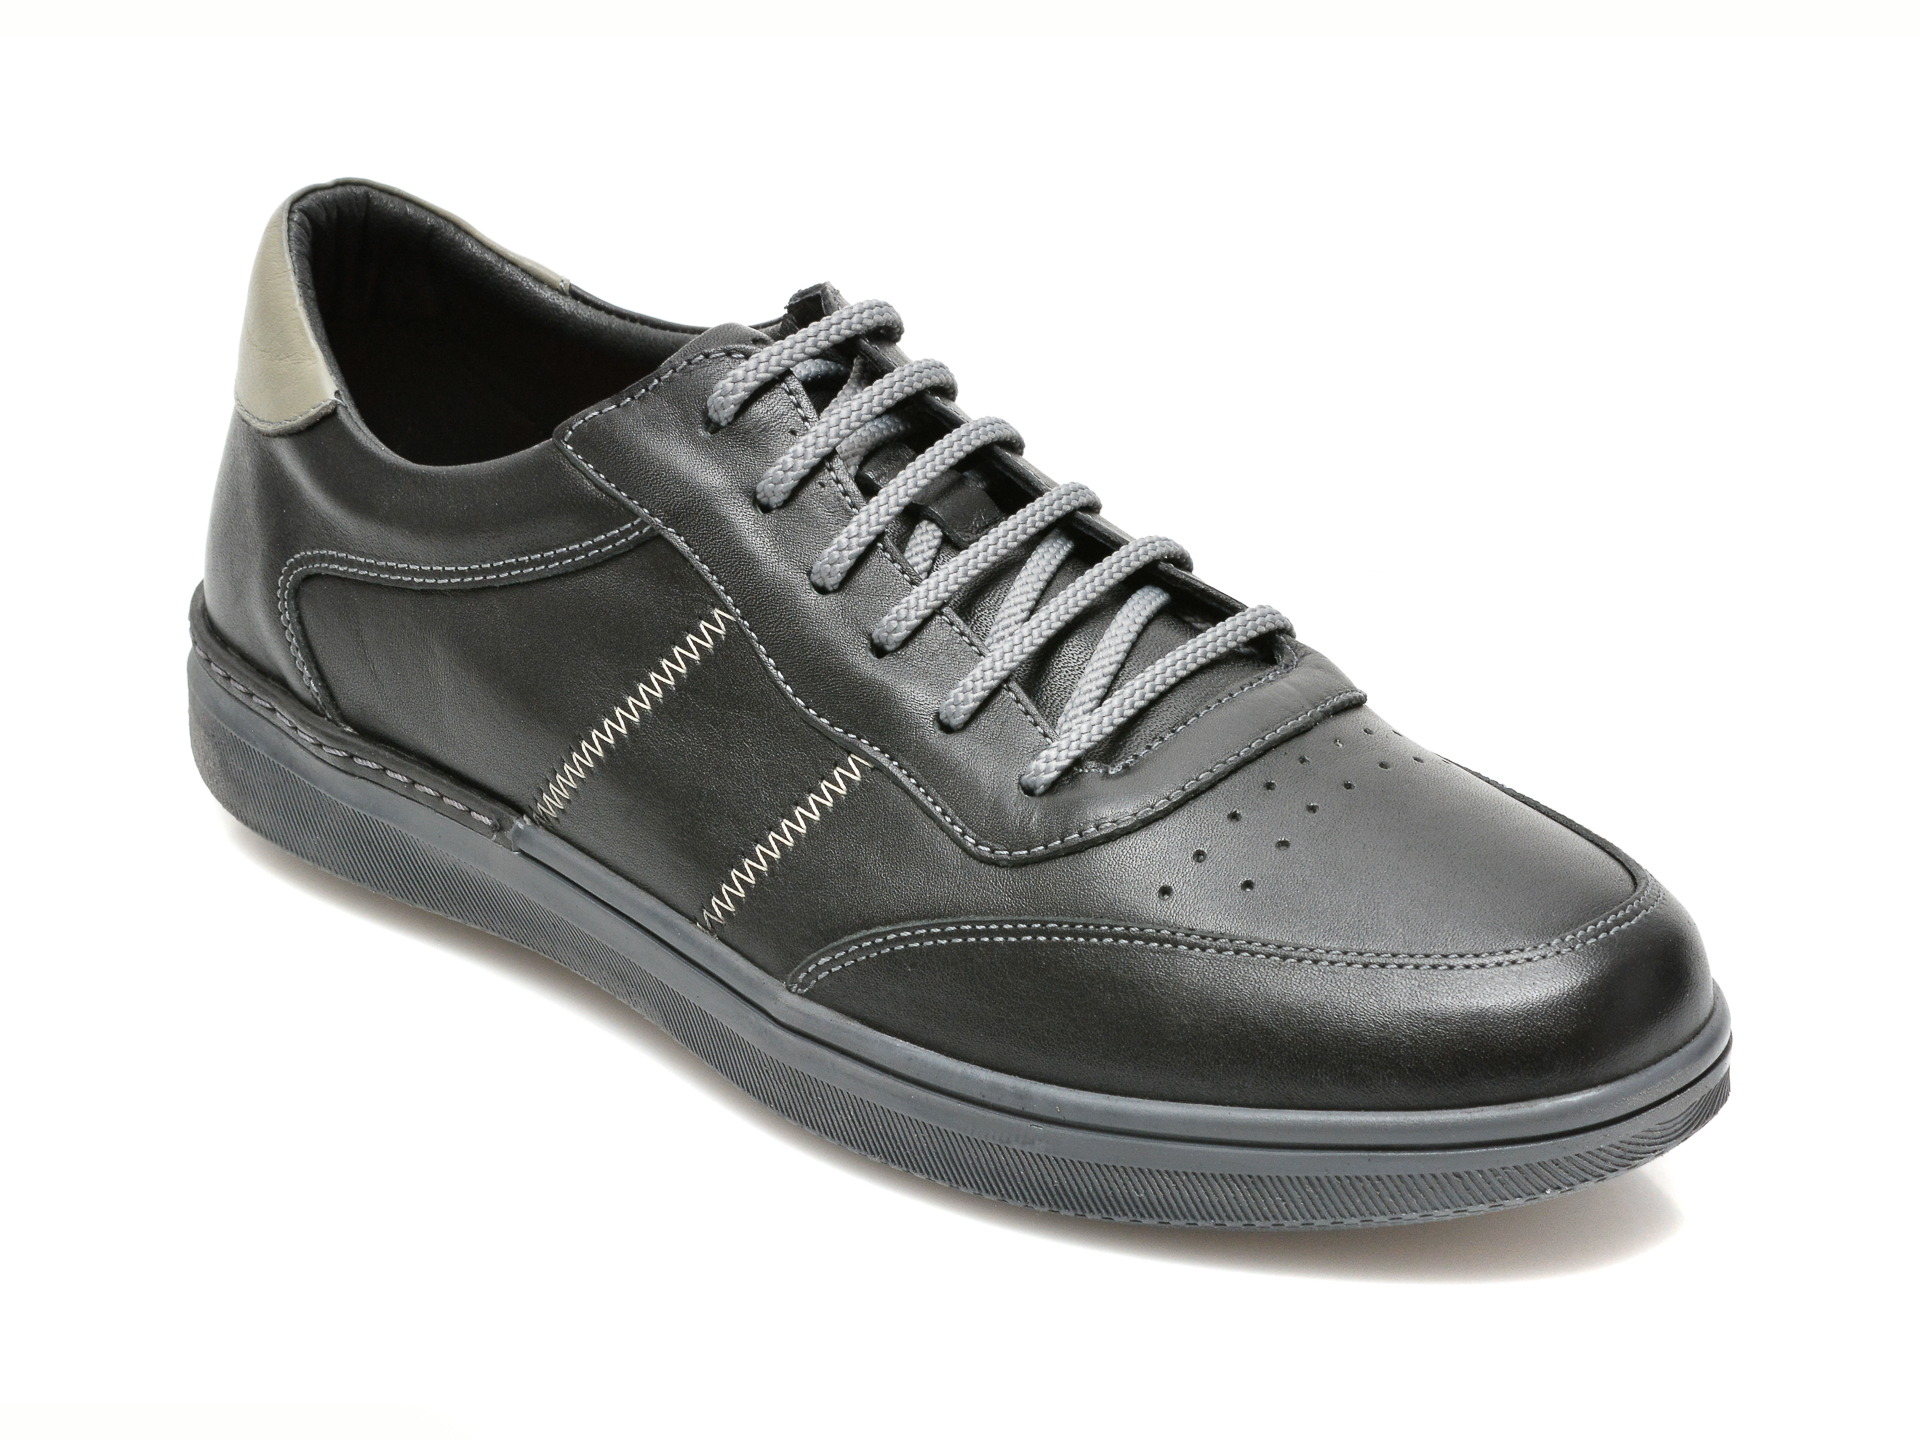 Pantofi OTTER negri, 3421, din piele naturala 2023 ❤️ Pret Super Black Friday otter.ro imagine noua 2022